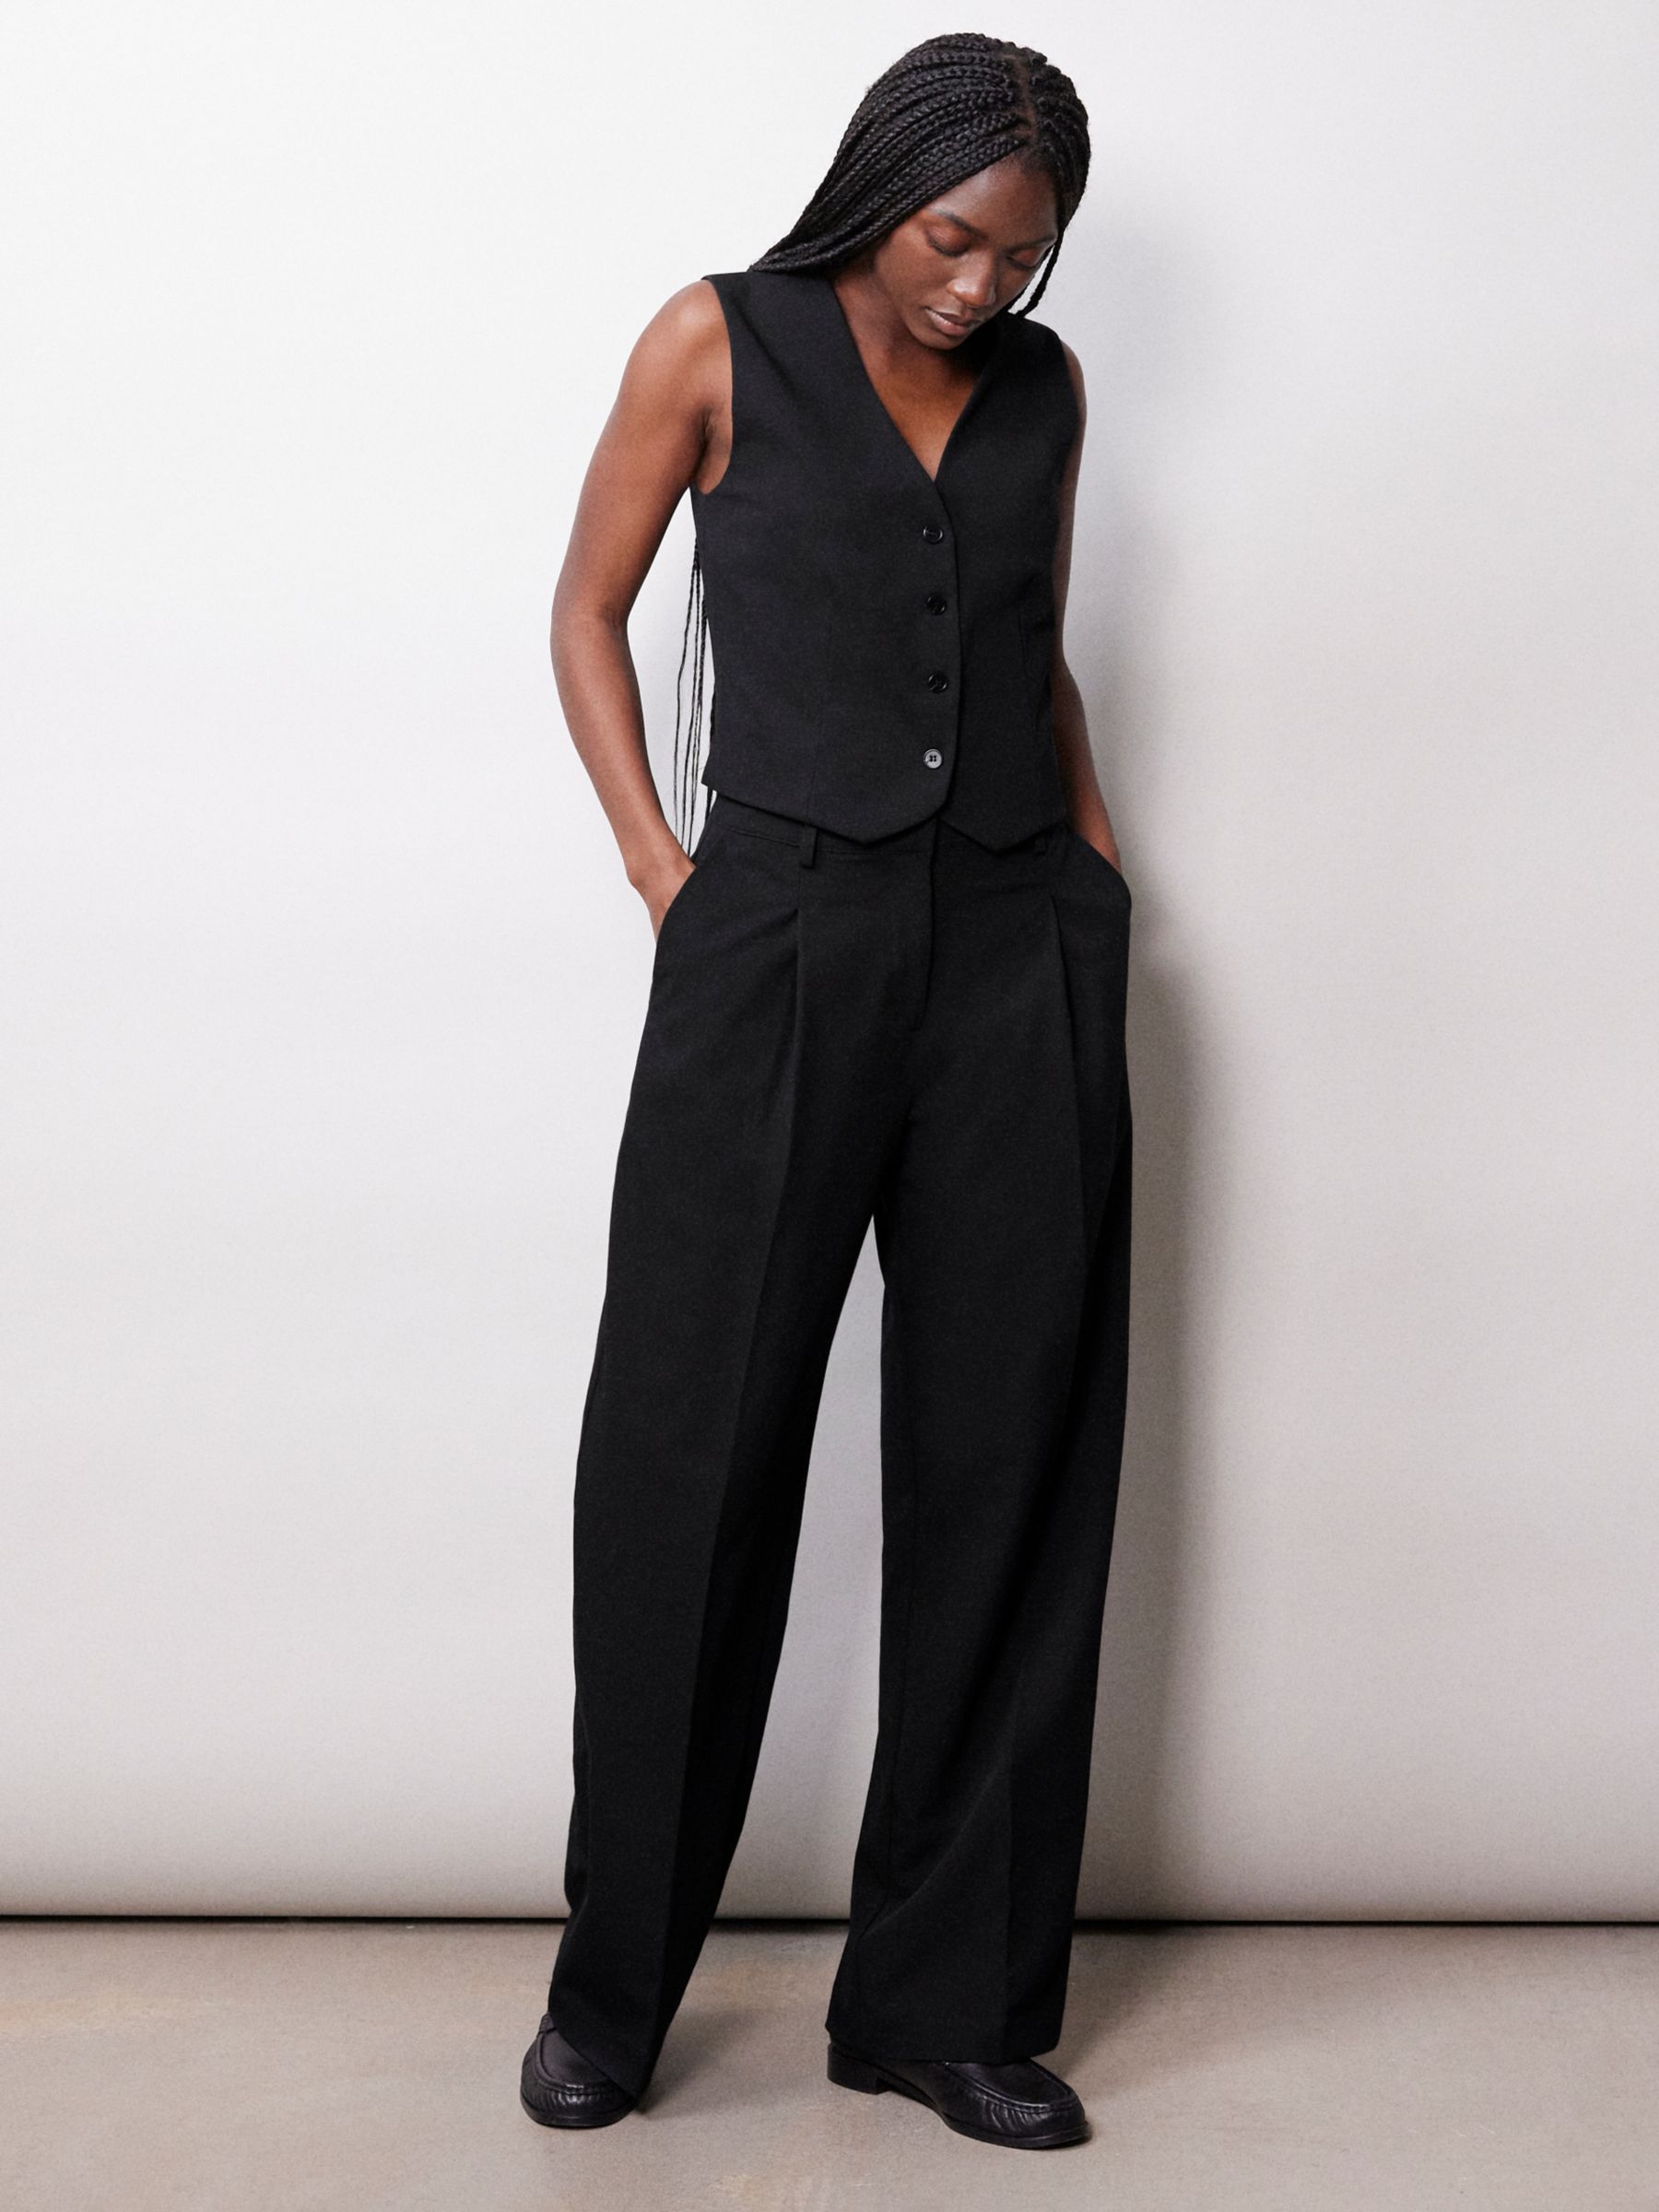 Узкие брюки строгого кроя со складками спереди Albaray, черный